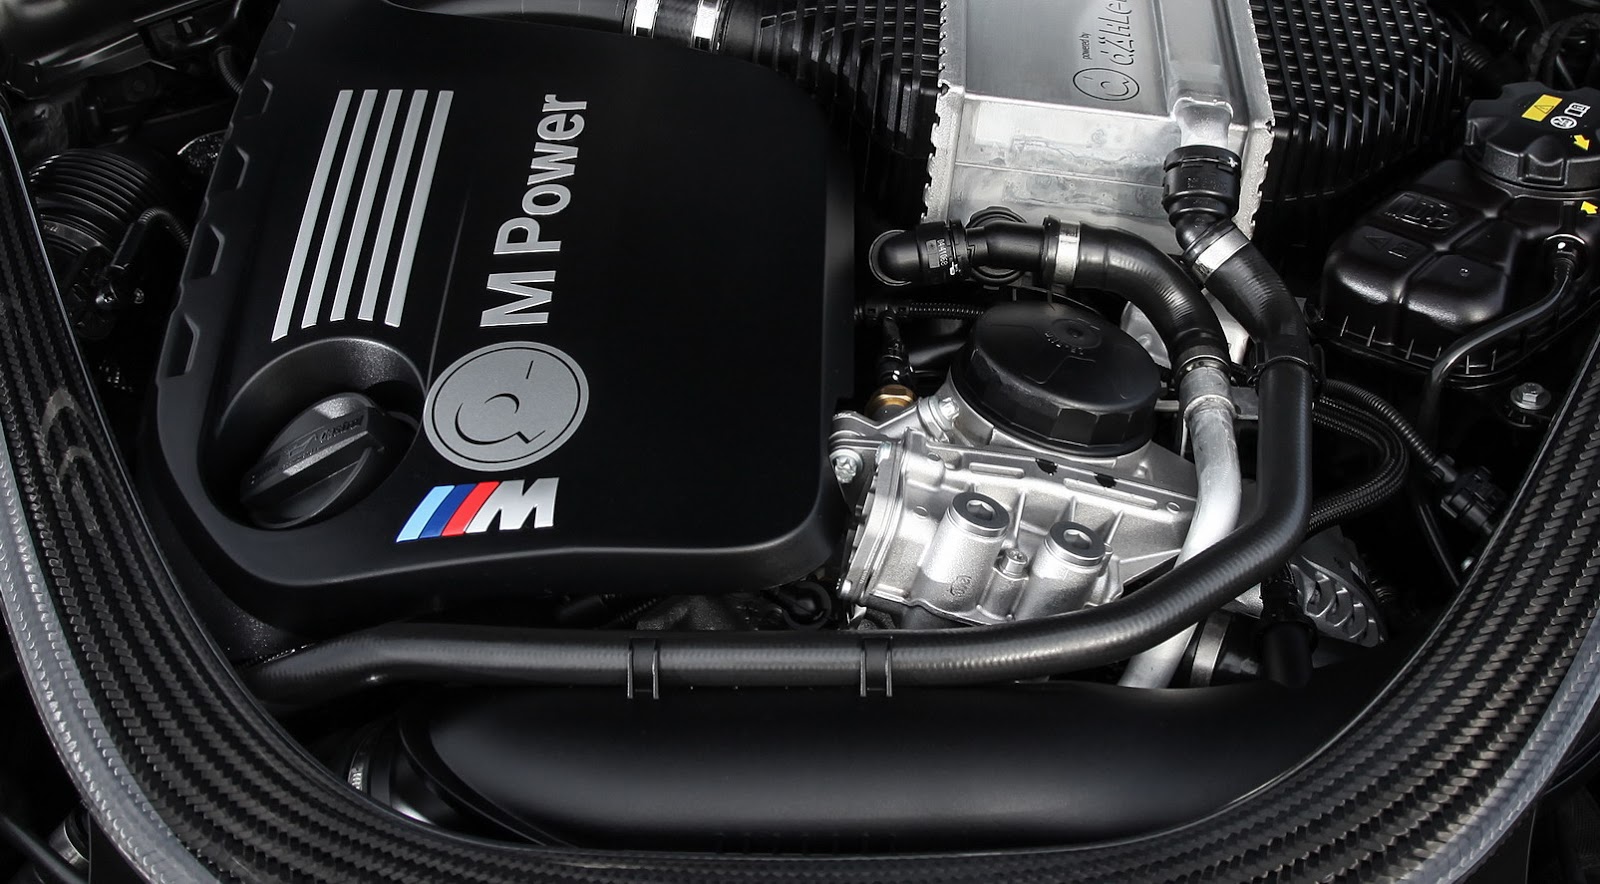 Dähler le mete el motor S55 del BMW M4 en el BMW M2 y lo potencia hasta los 540 CV